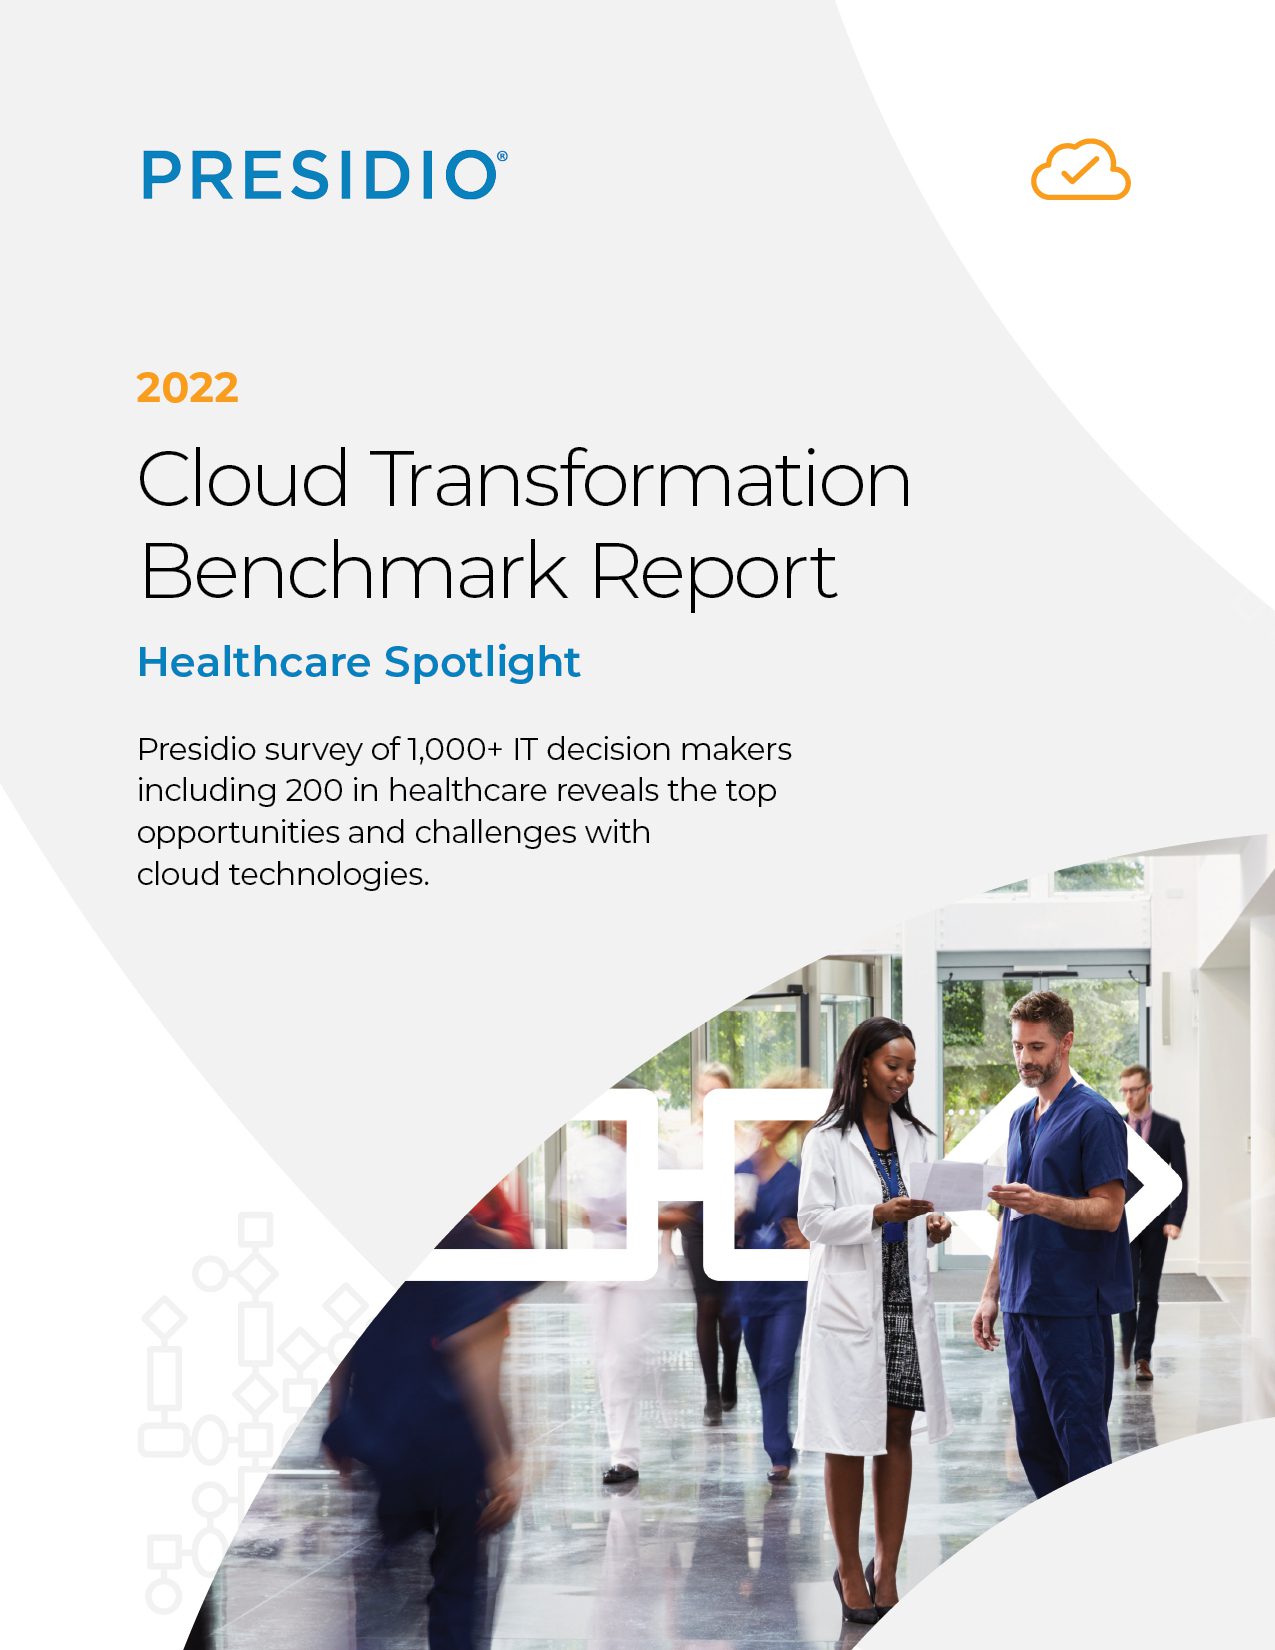 Presidio Cloud Transformation Report: Healthcare